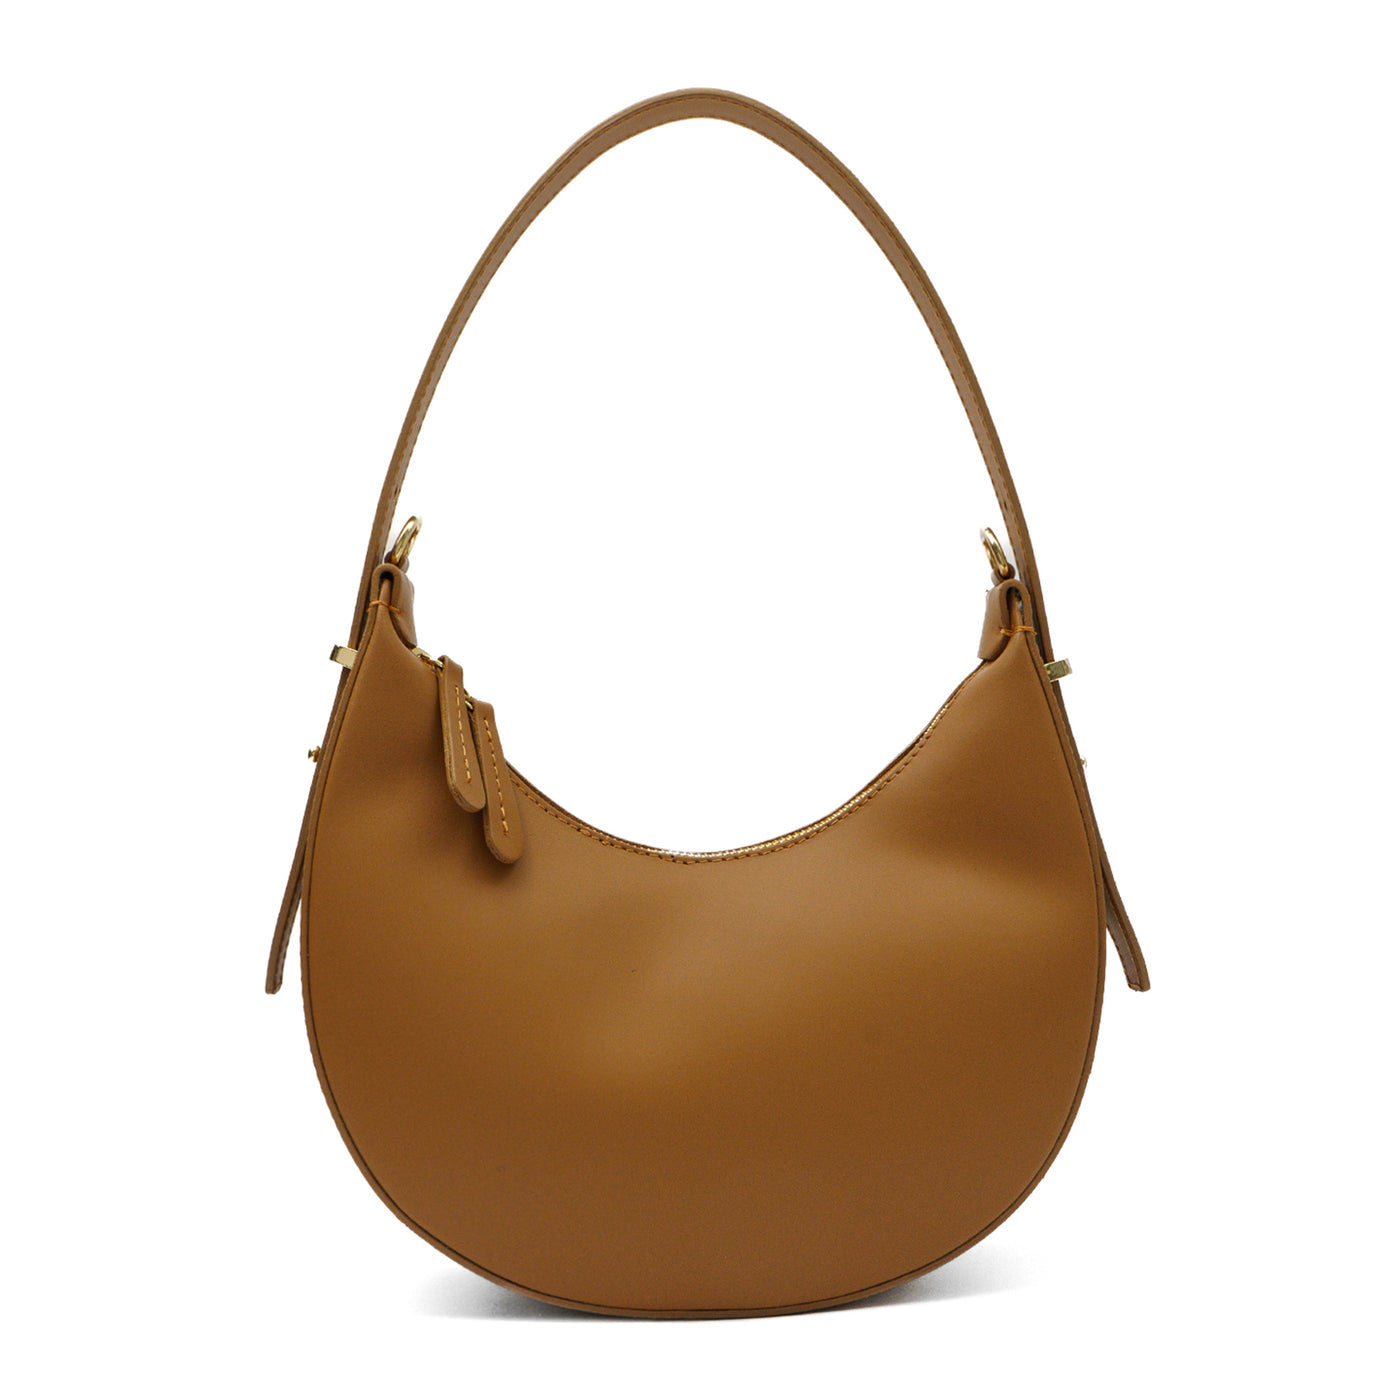 Leather bag "Luna", Light brown